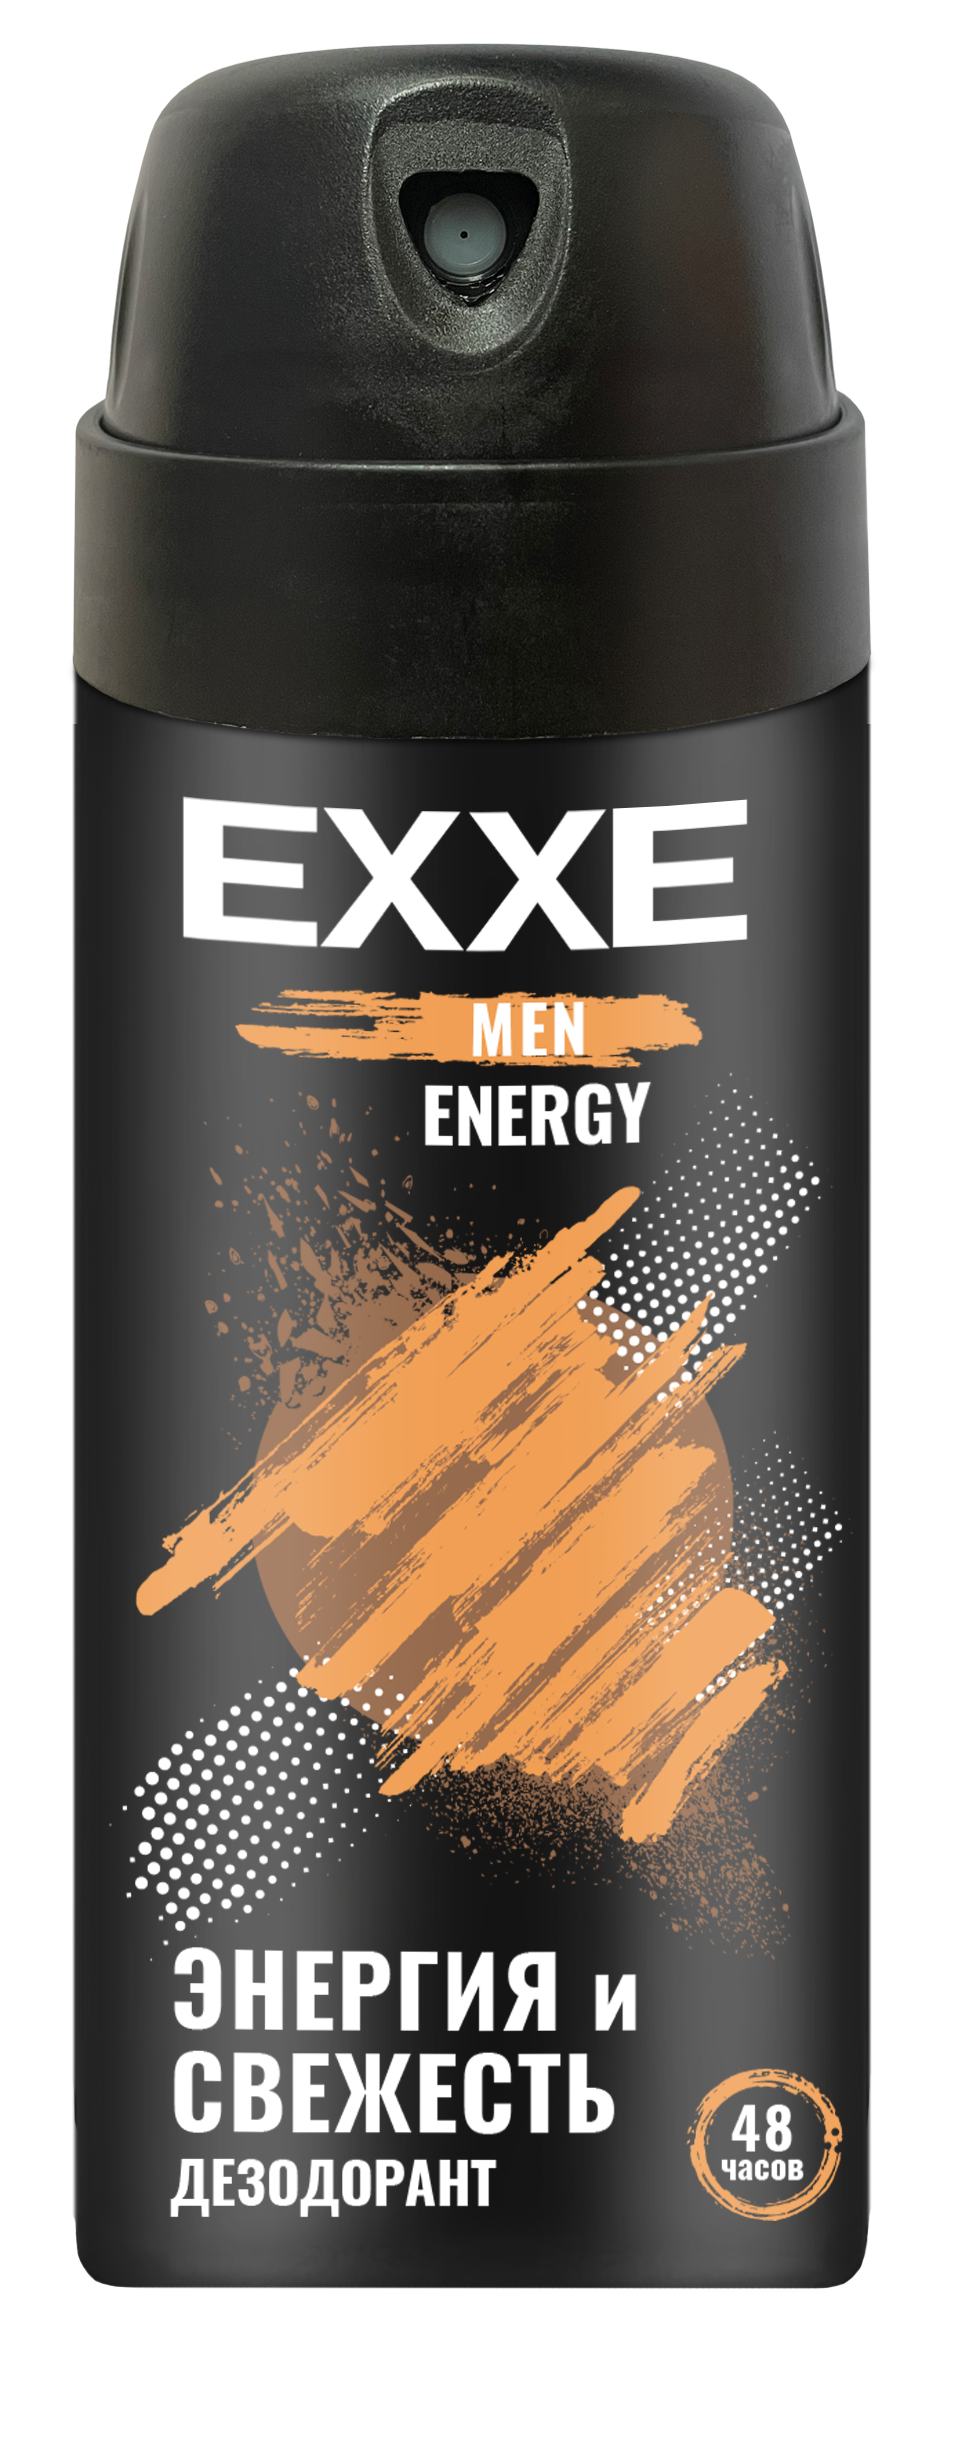 Мужской дезодорант EXXE MEN ENERGY, аэрозоль, 150 мл vichy ом набор мужской дезодорант ролик для чувств кожи 48ч 50 мл 2 шт скидка 50% на второй продукт